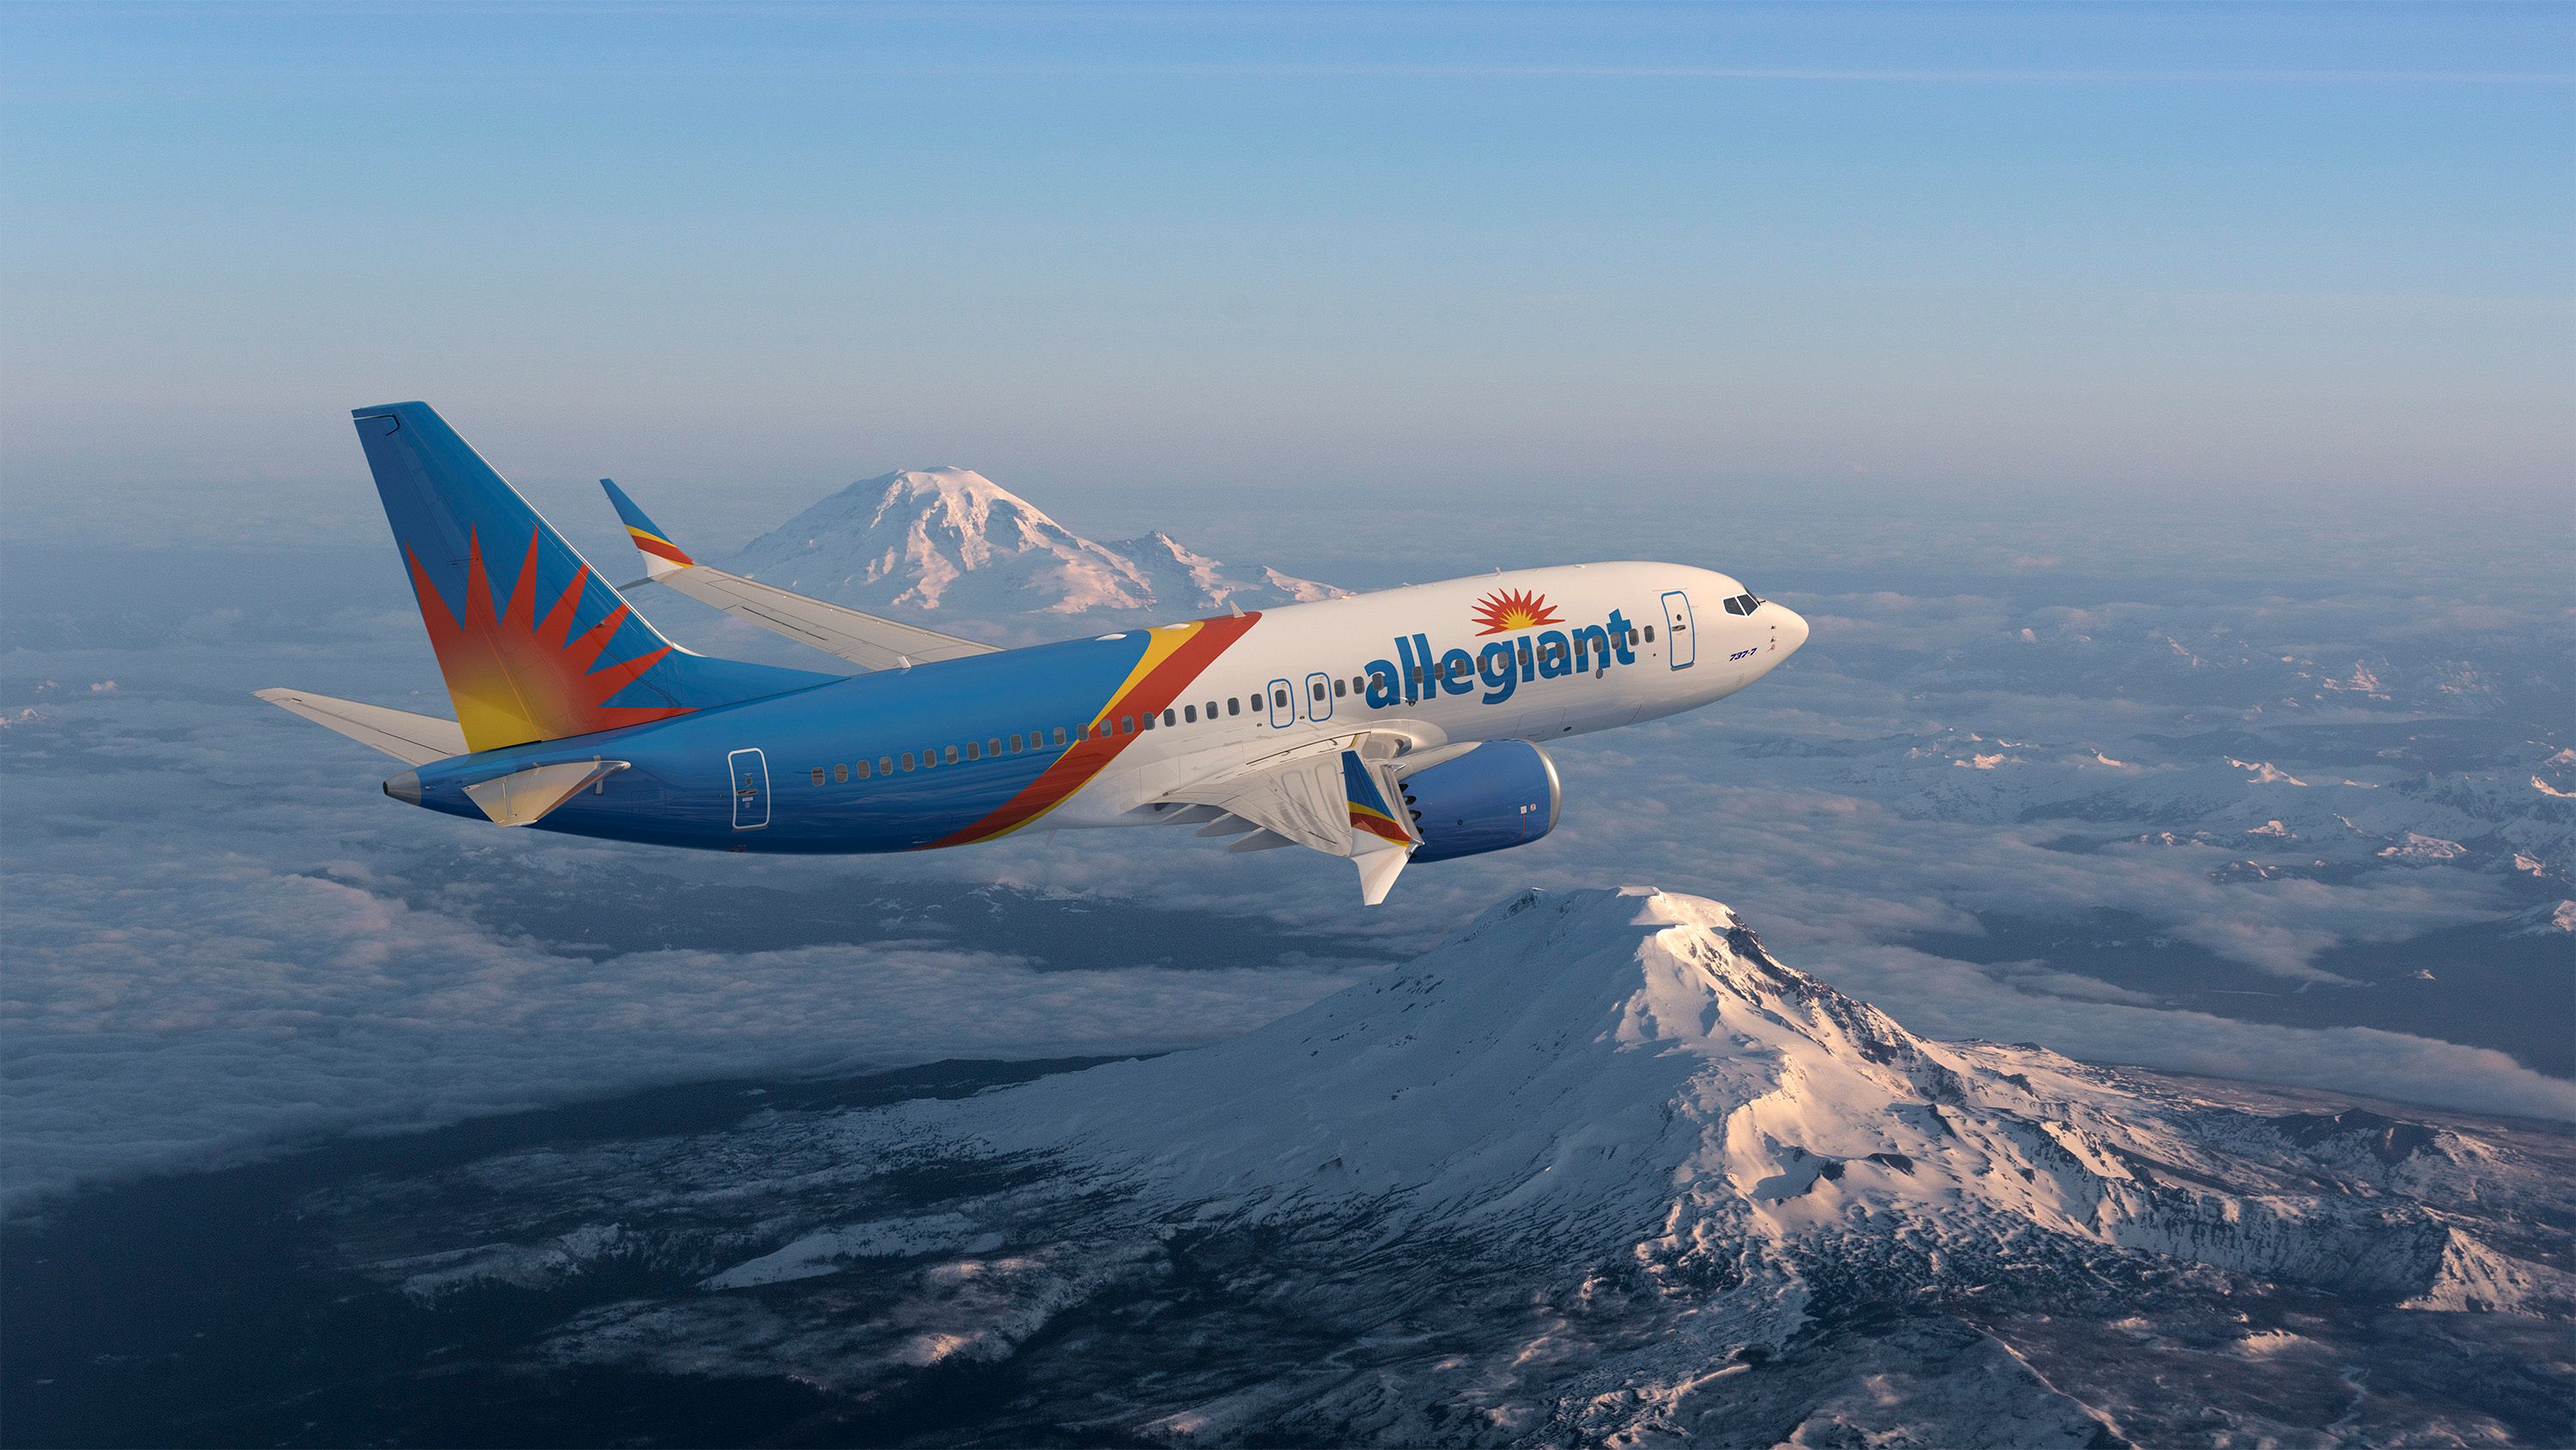 The Allegiant Boeing 737 MAX above Rainier and Adams